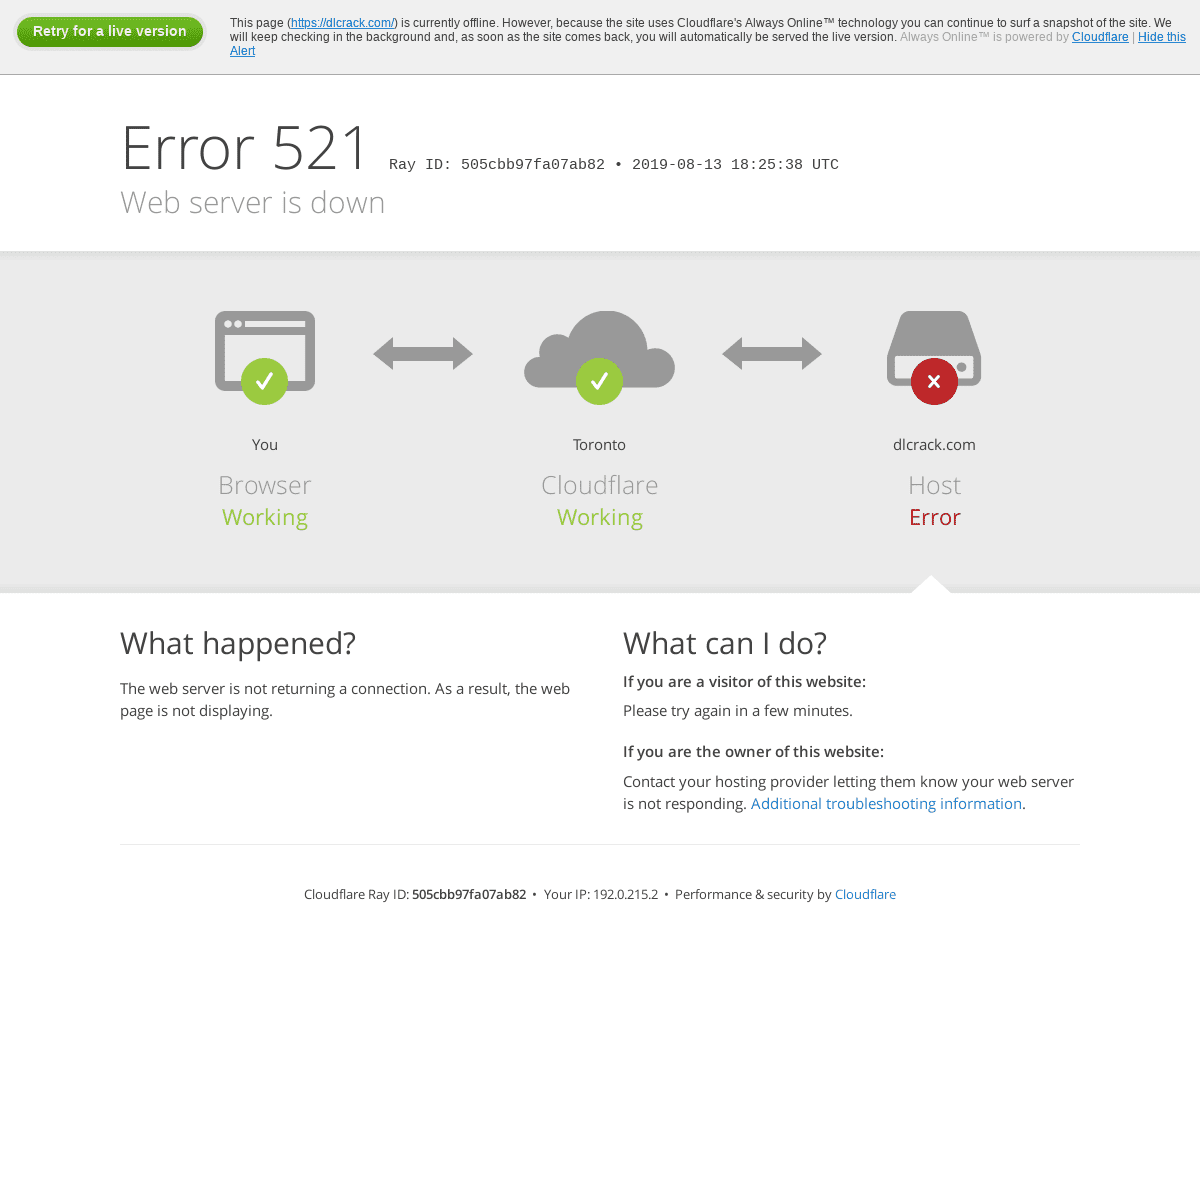 dlcrack.com | 521: Web server is down